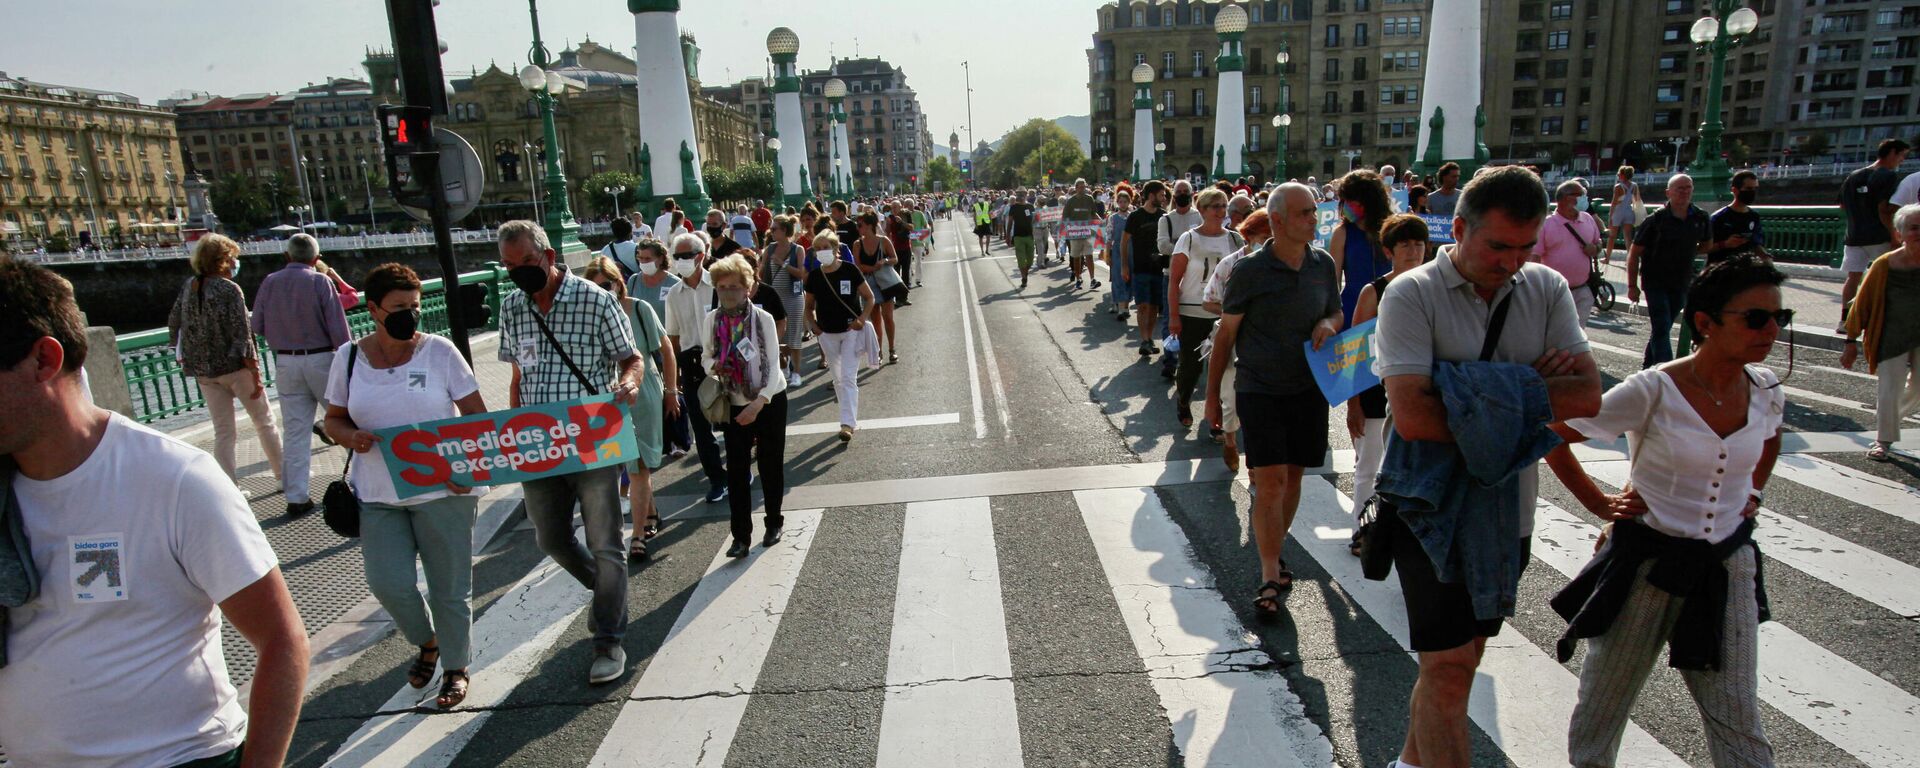 Ciudadanos en una manifestación a favor del acercamiento de los reclusos de ETA, a 21 de agosto de 2021, en San Sebastián, Euskadi (España).  - Sputnik Mundo, 1920, 03.09.2021